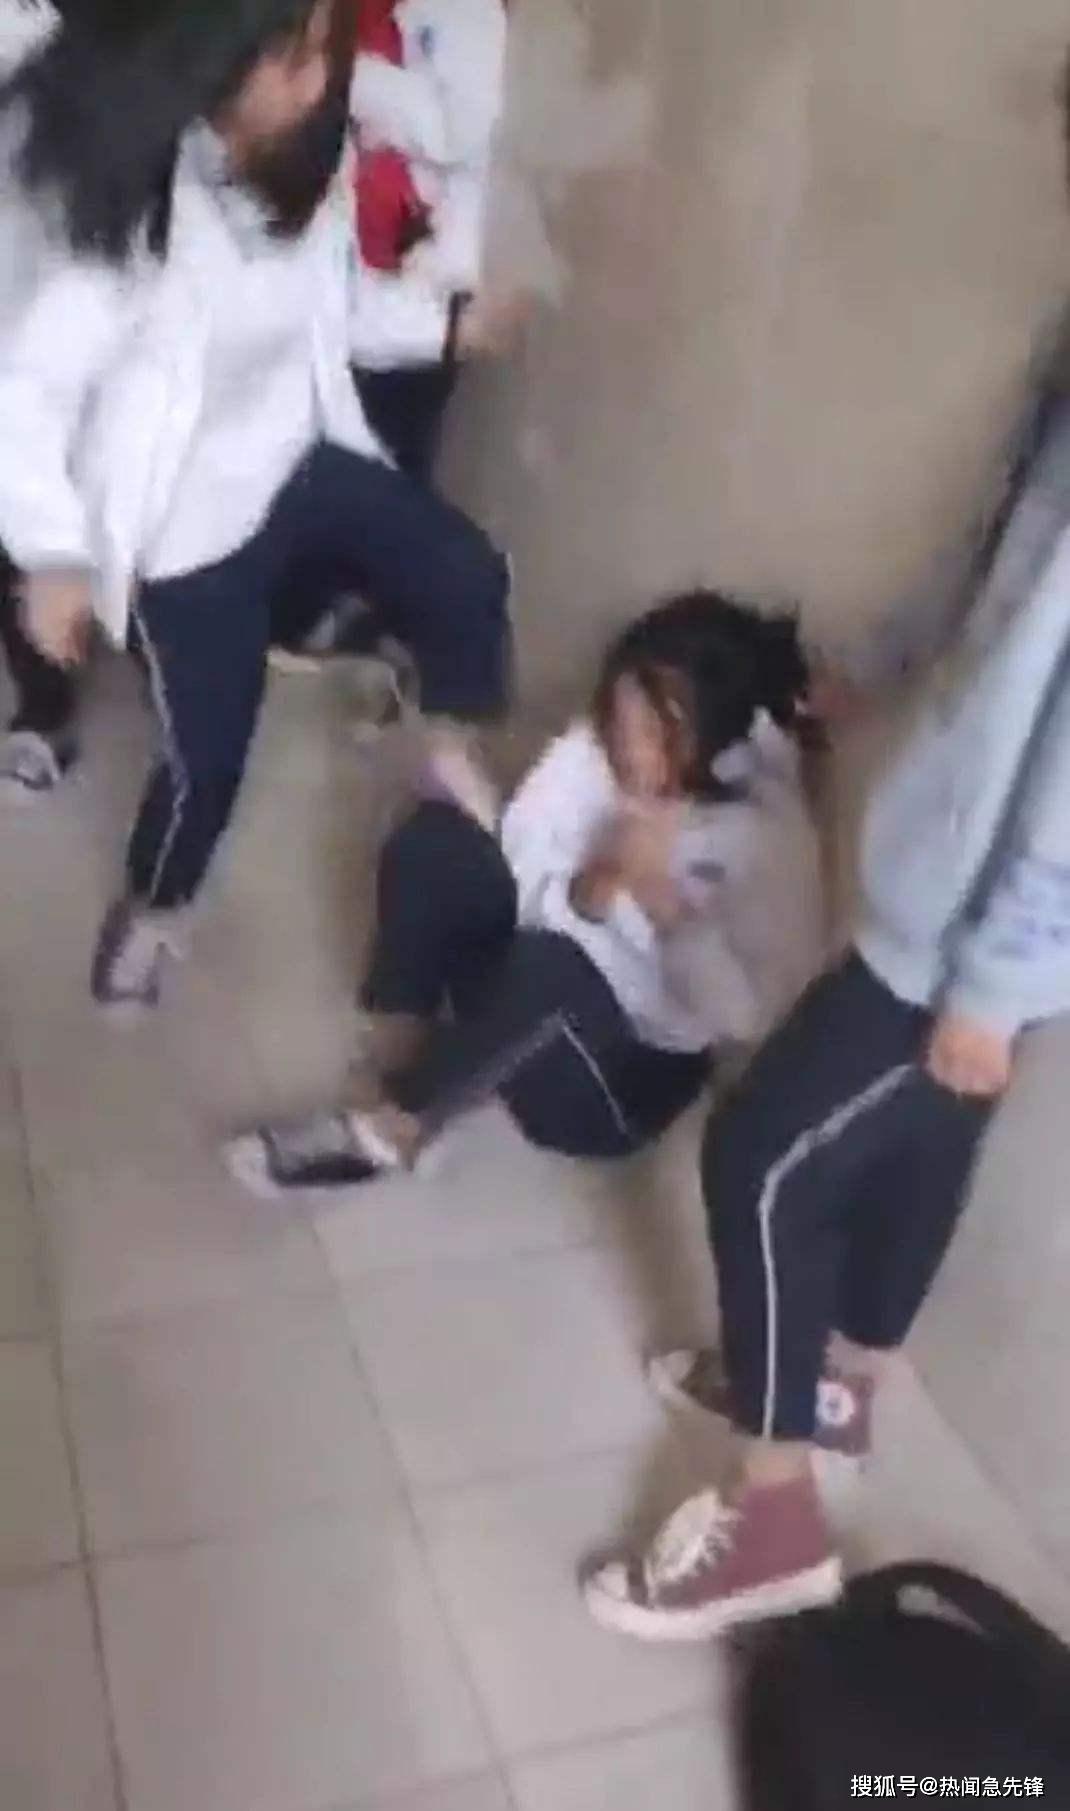 山东一中学有女生在厕所打架校方警方正调查处理